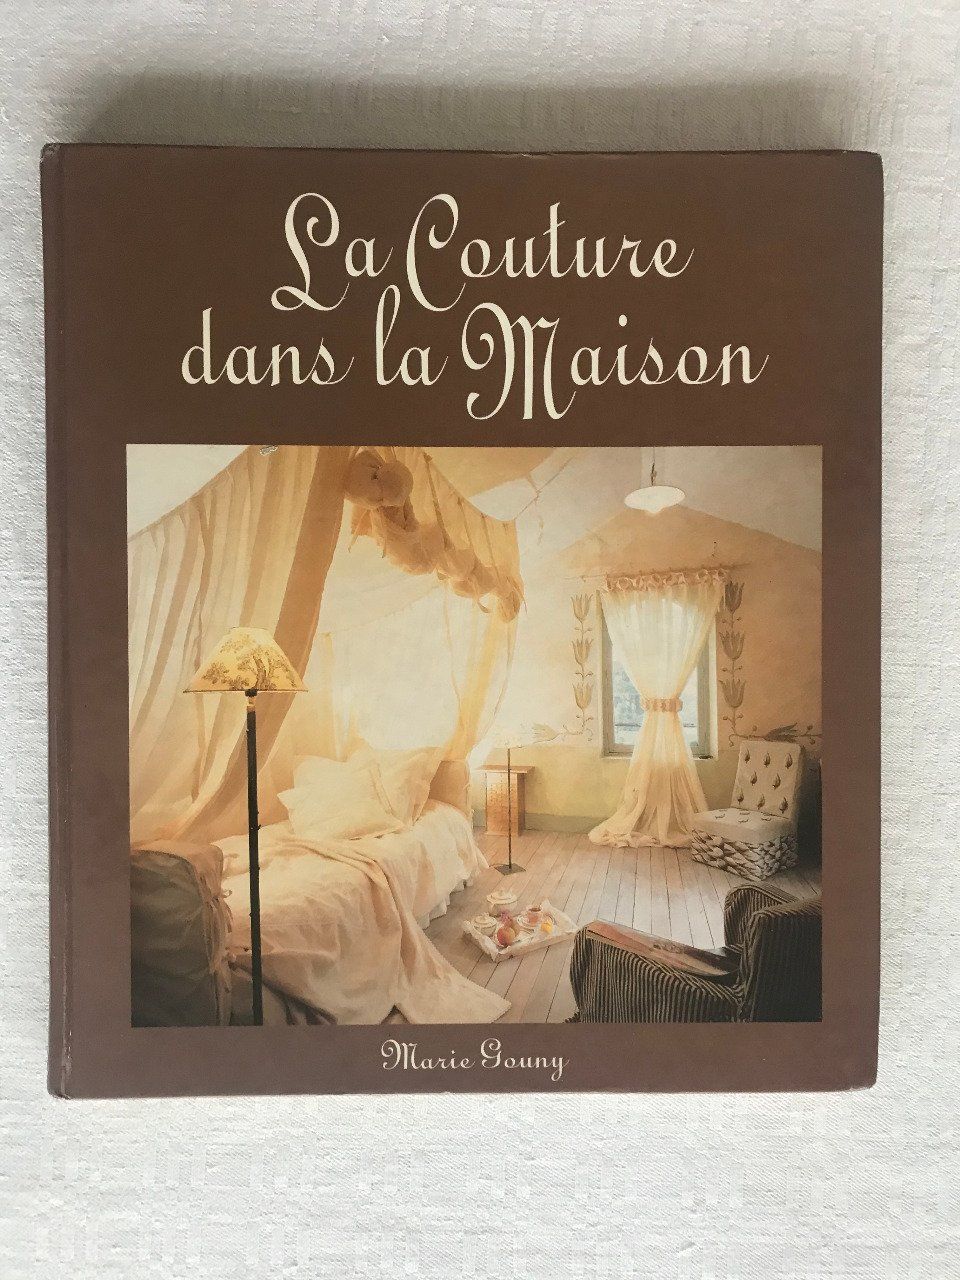 Livre La couture dans la maison de Marie Gouny